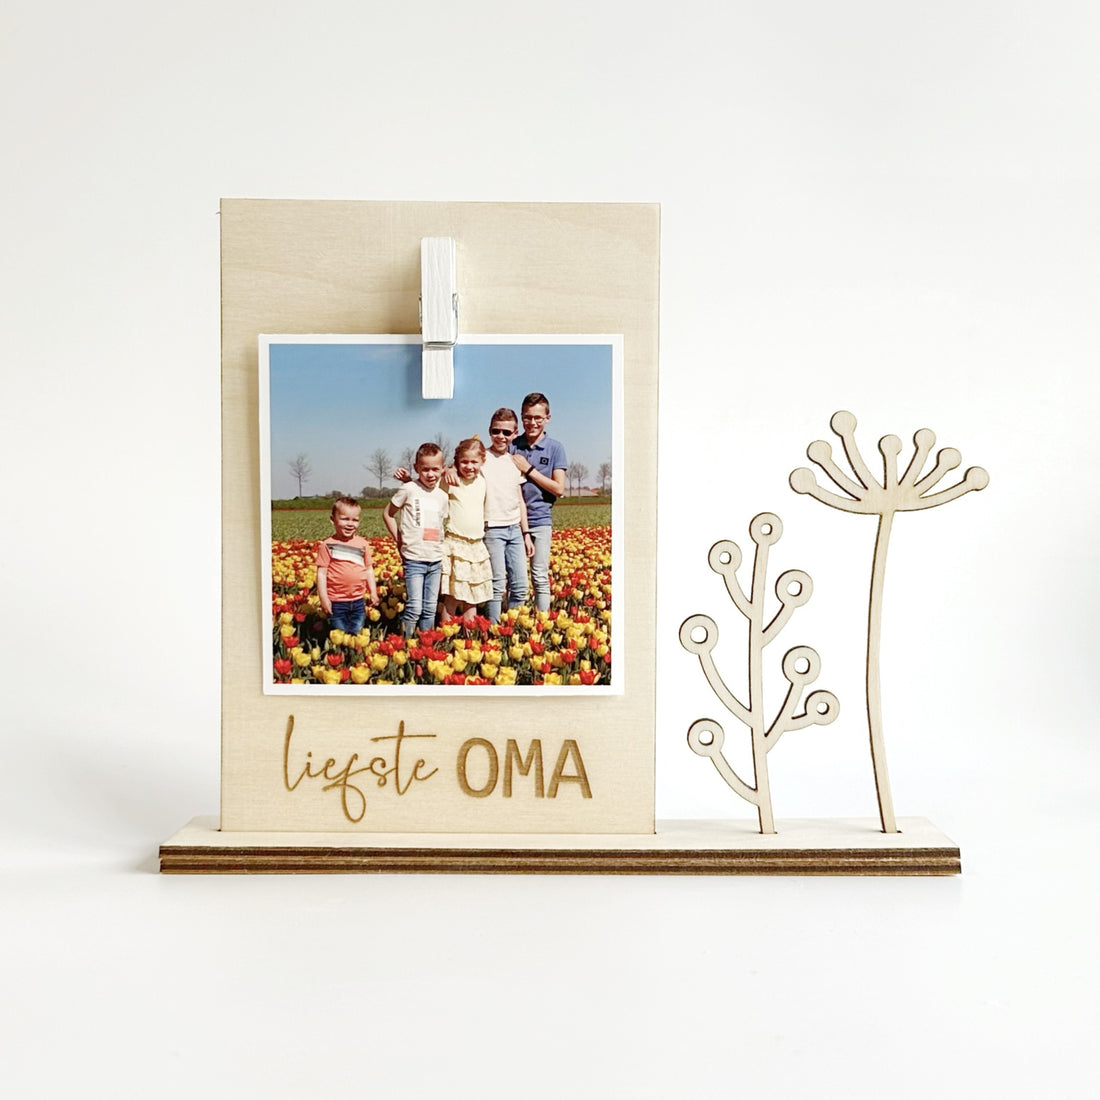 liefste mama / oma | houten bordje met bloemen